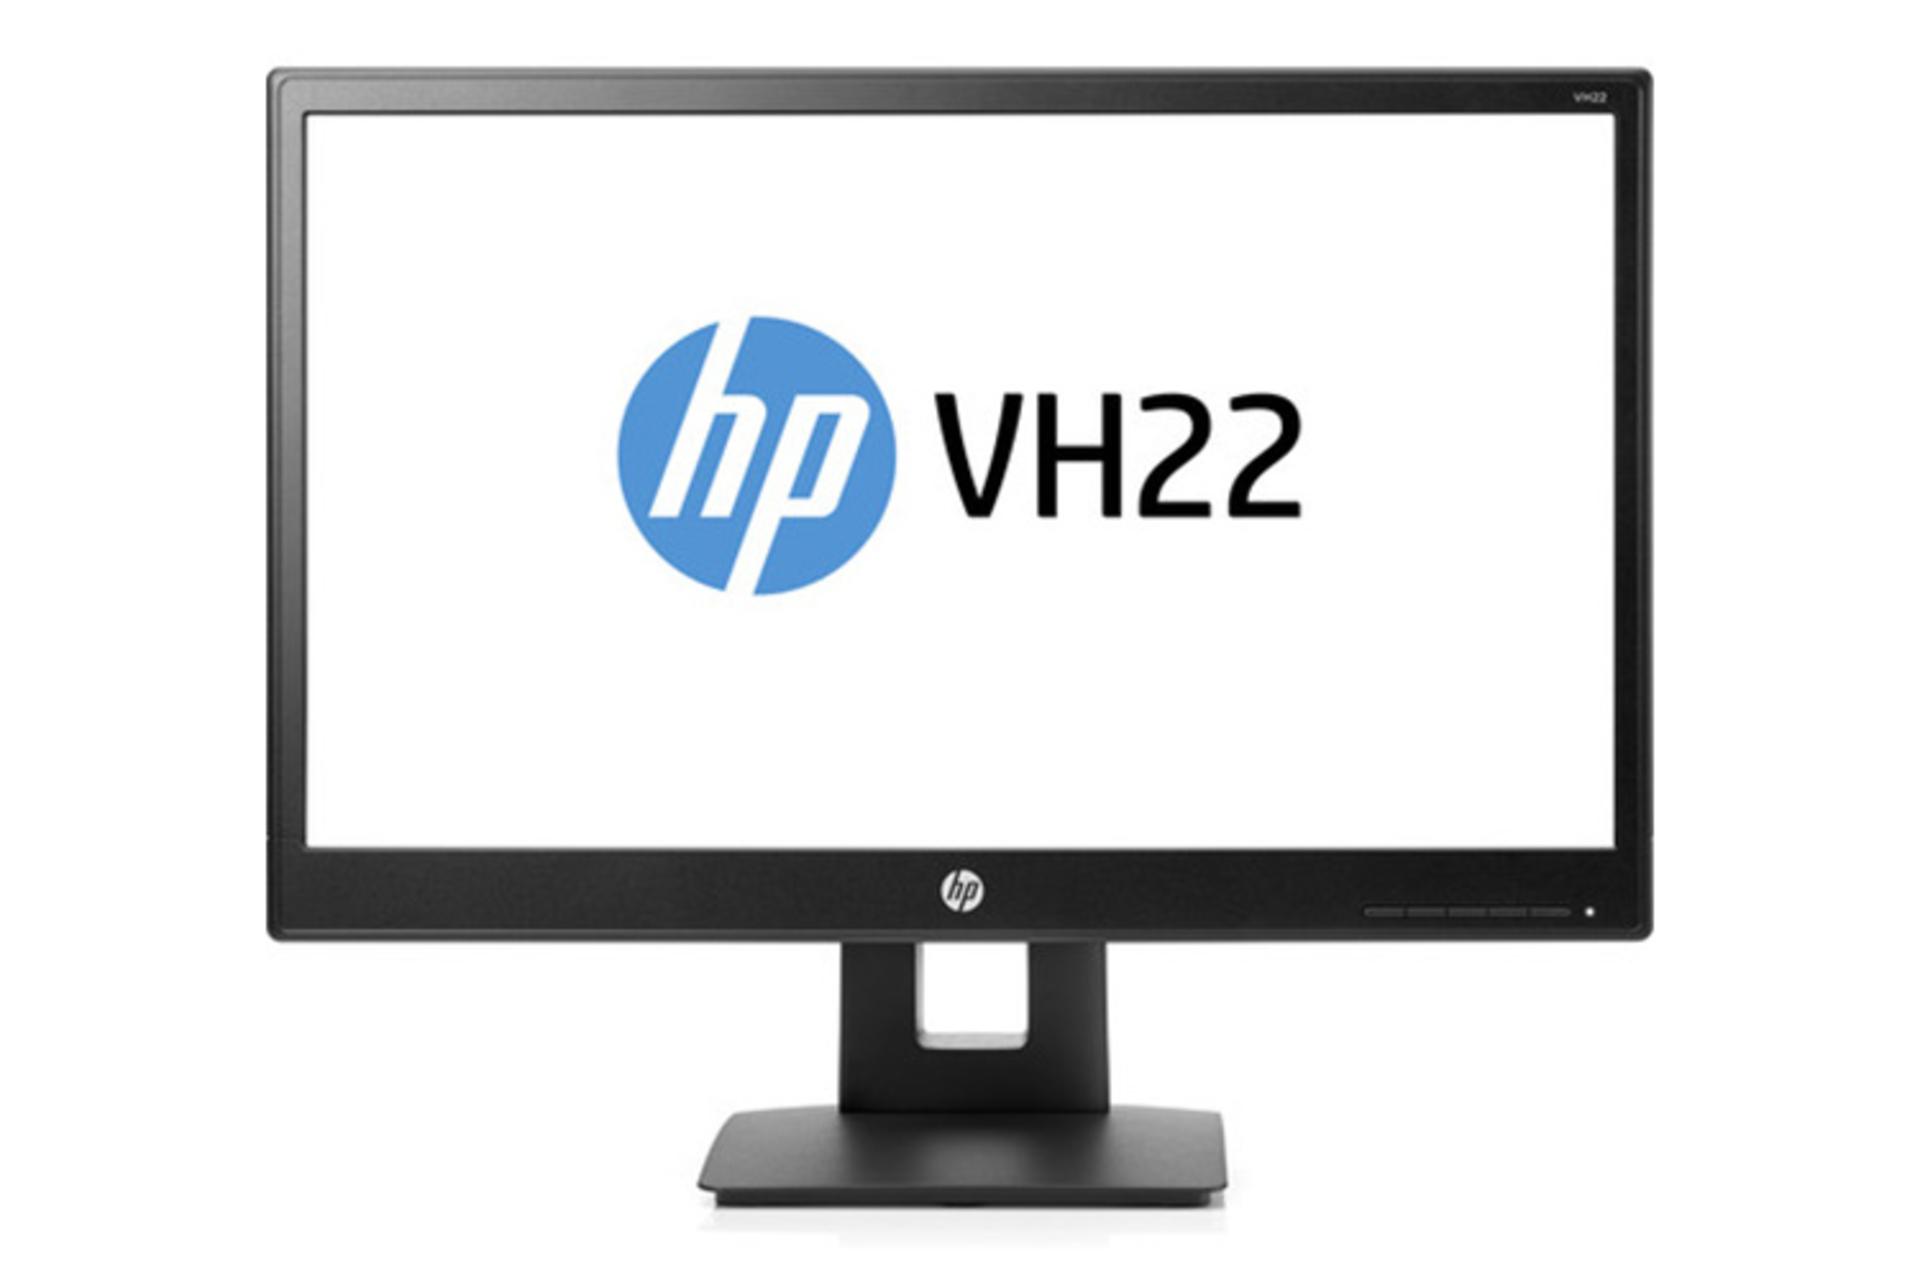 HP VH22 